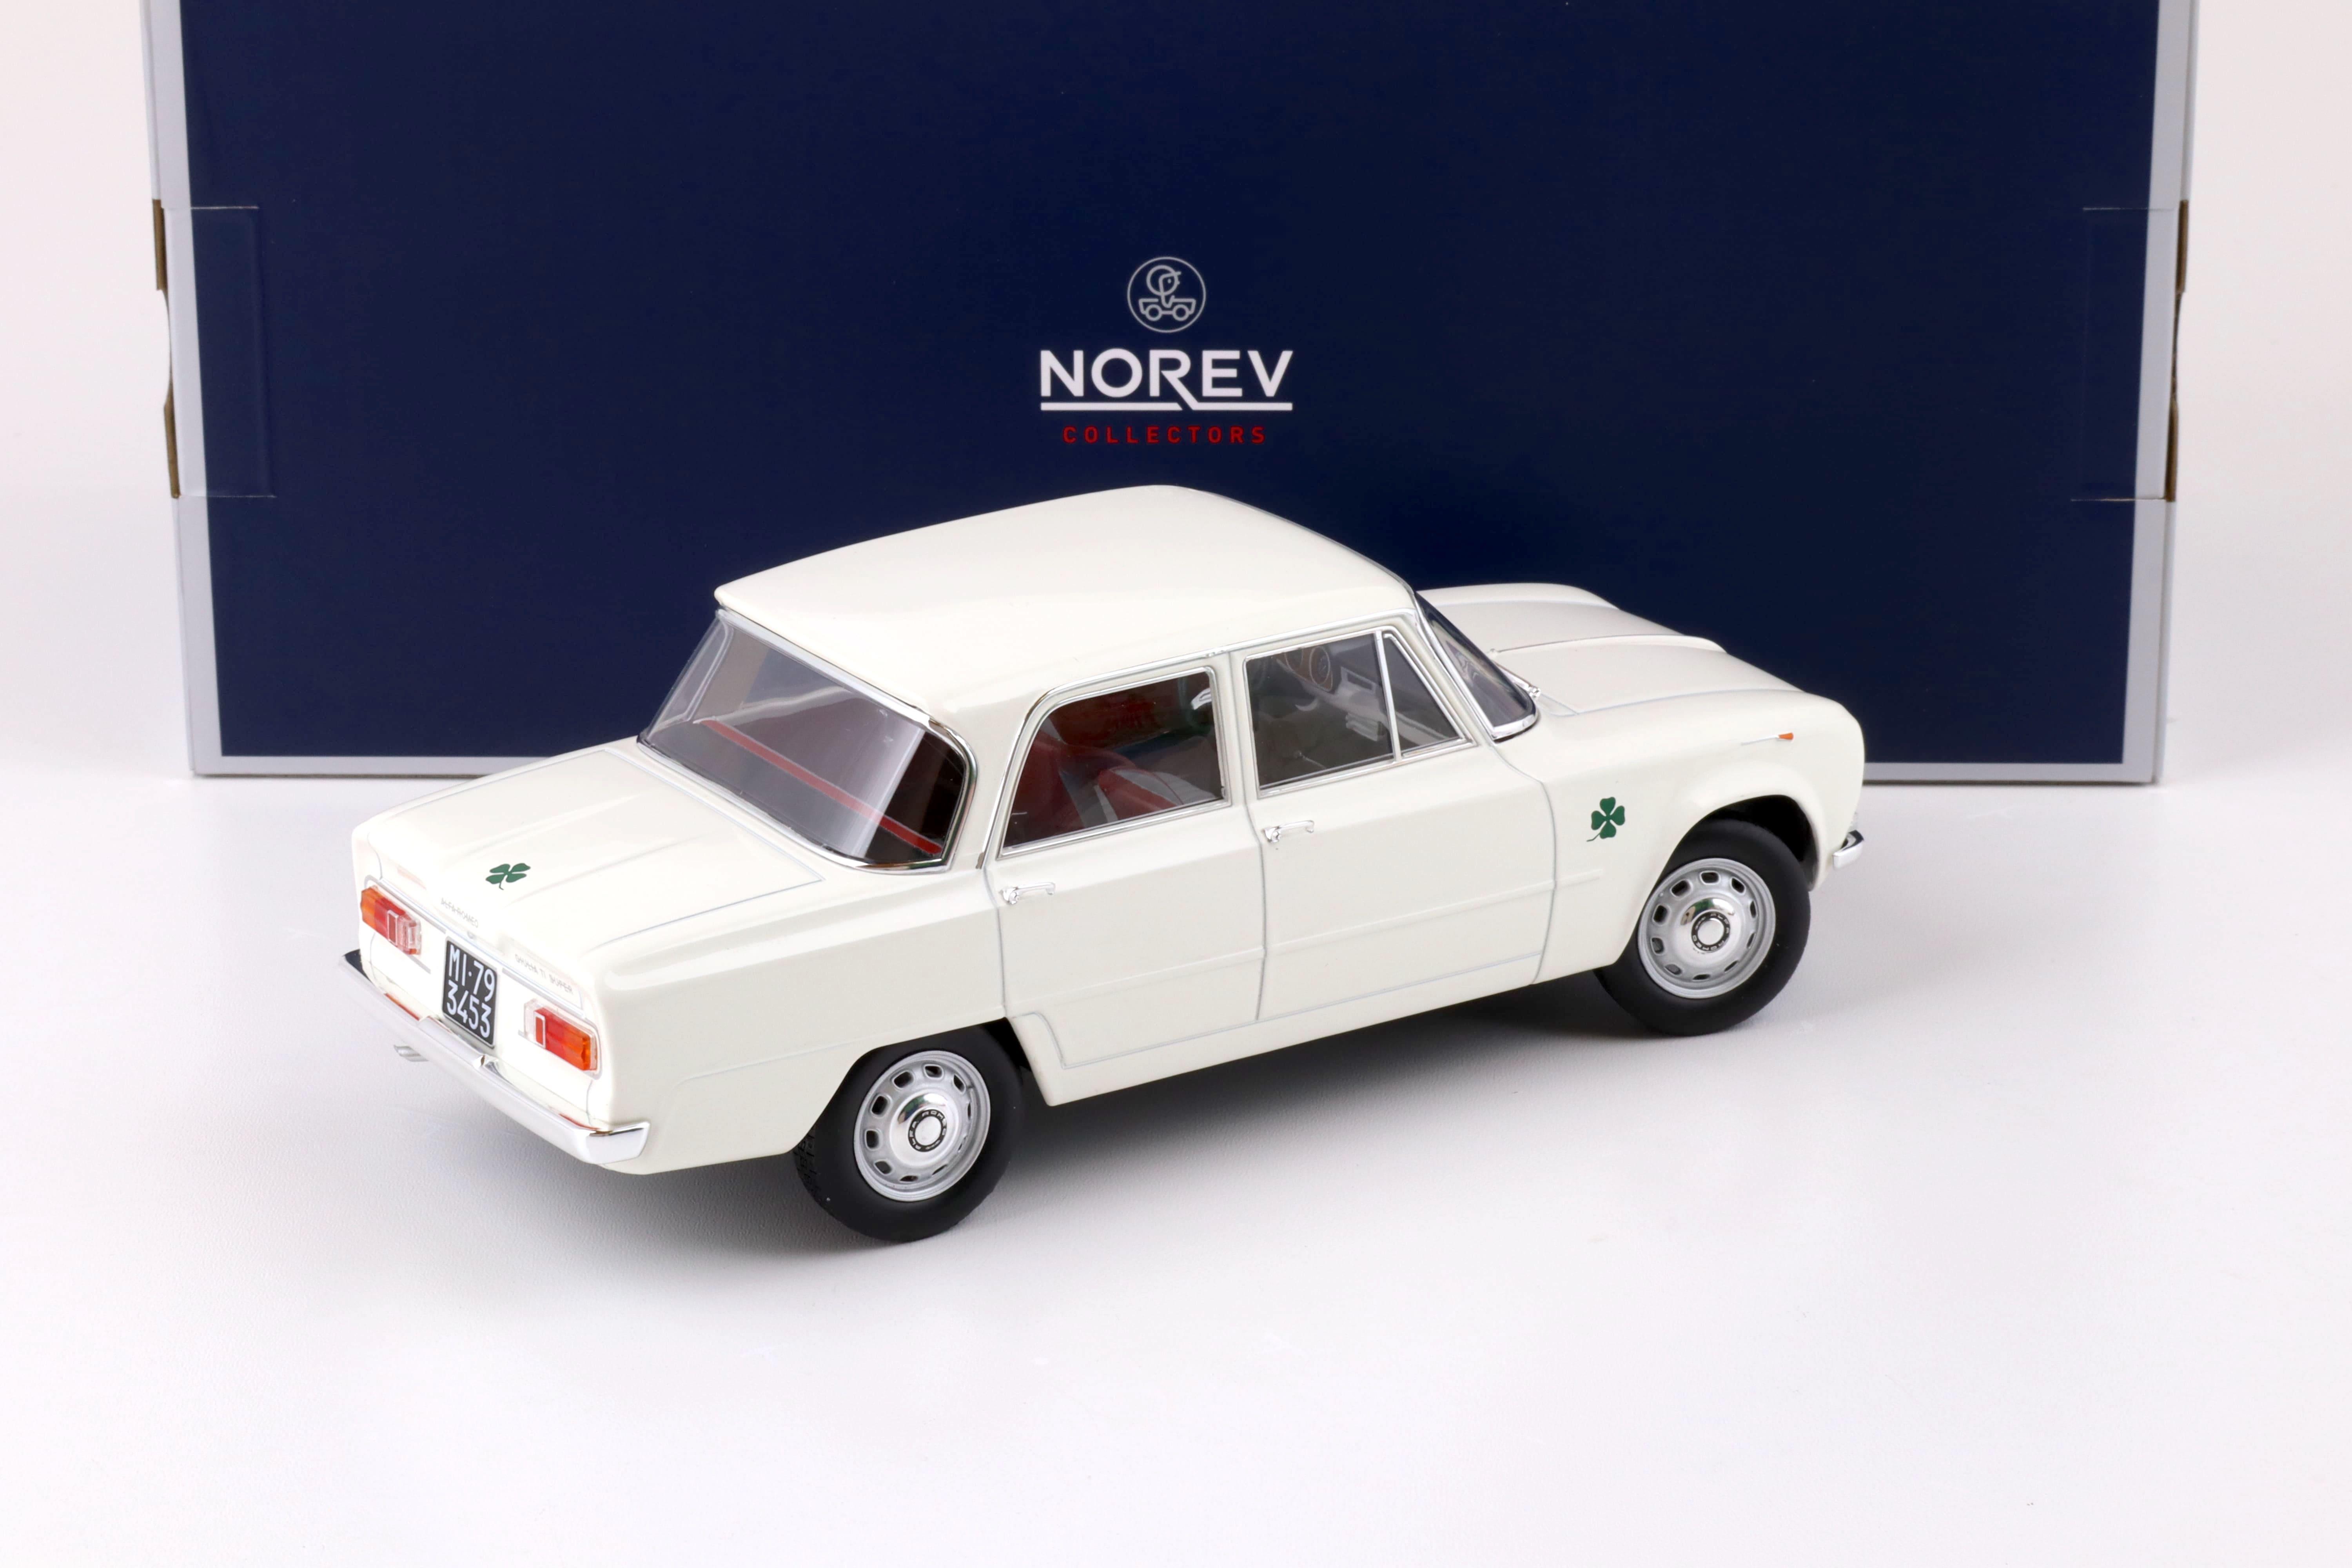 1:18 Norev Alfa Romeo Giulia TI Super 1963 white